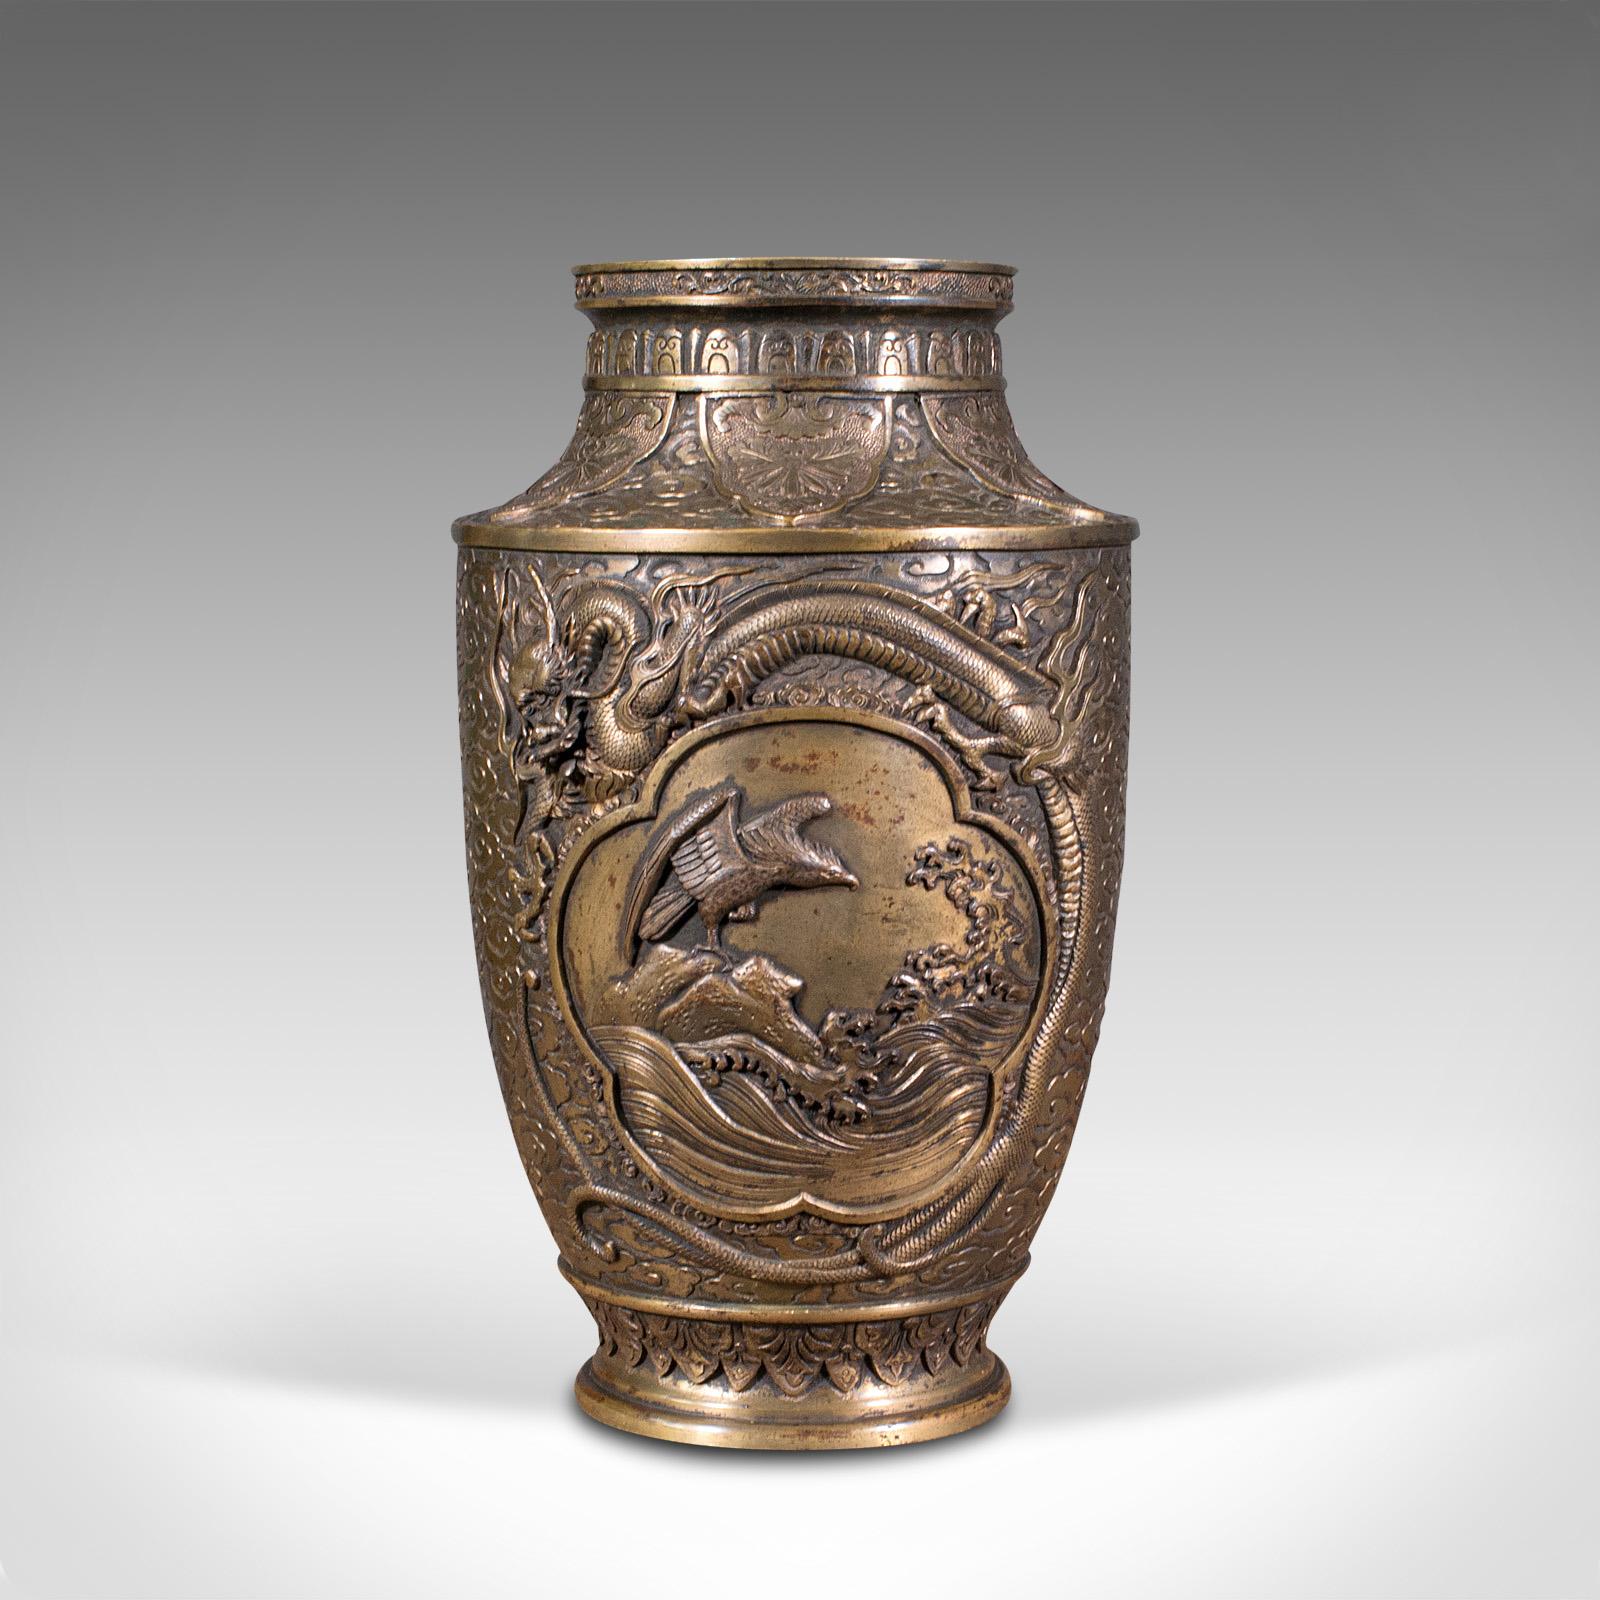 Il s'agit d'un grand vase décoratif ancien. Une urne japonaise en bronze de la période Meiji, datant de la fin de la période victorienne, vers 1900.

Vase ancien très impressionnant avec des détails saisissants
Affiche une patine vieillie